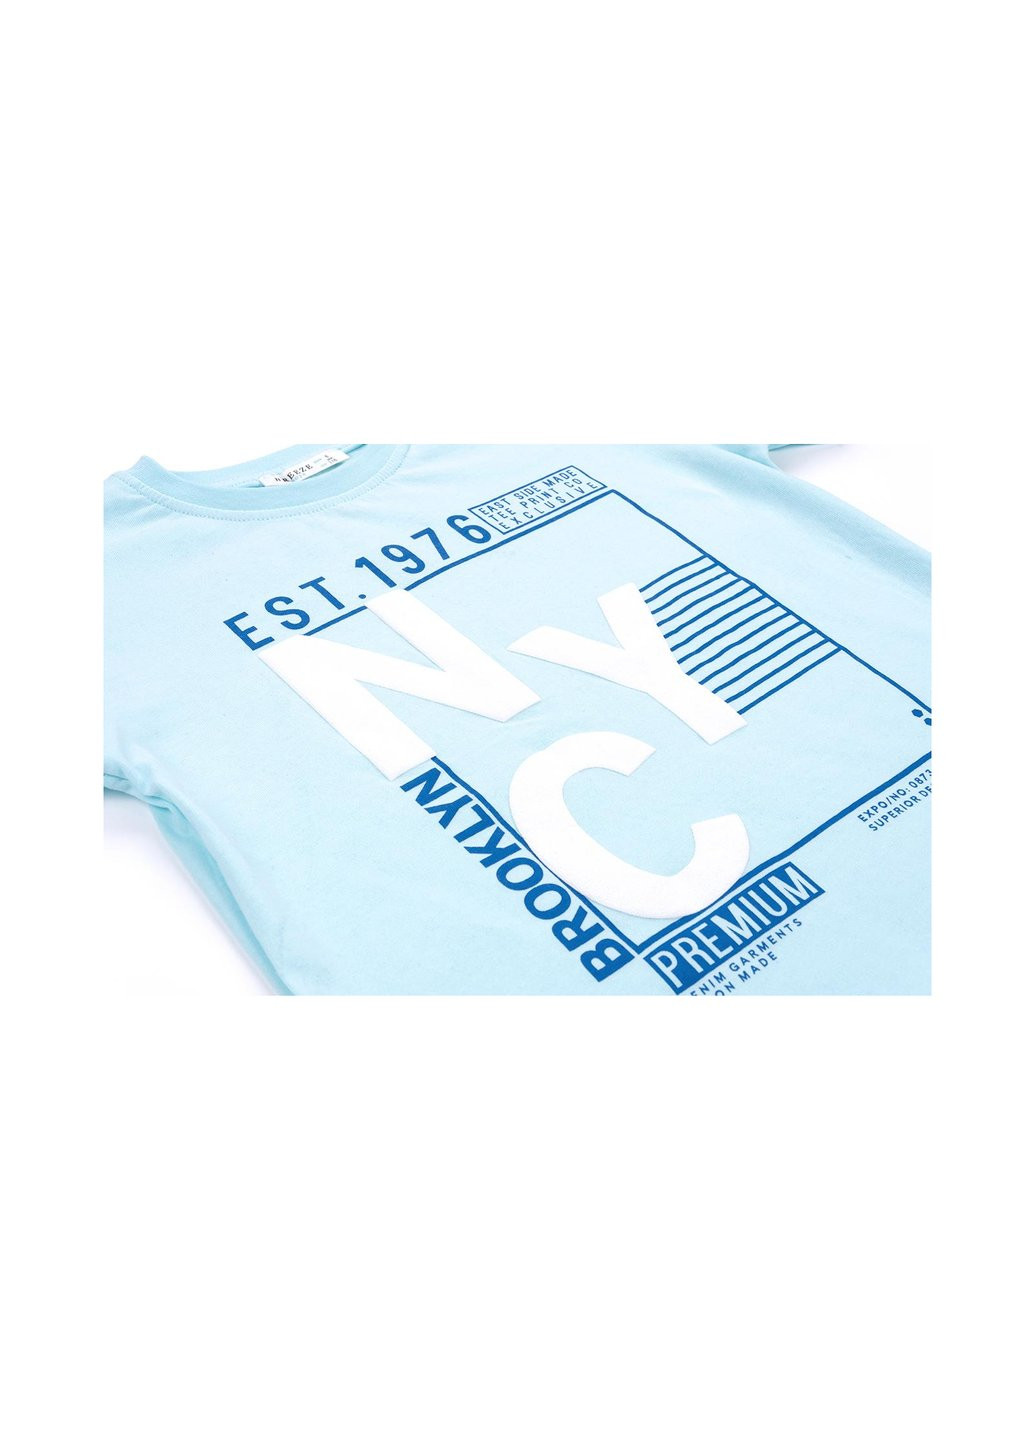 Блакитний літній набір дитячого одягу "brooklyn" (10143-140b-blue) E&H